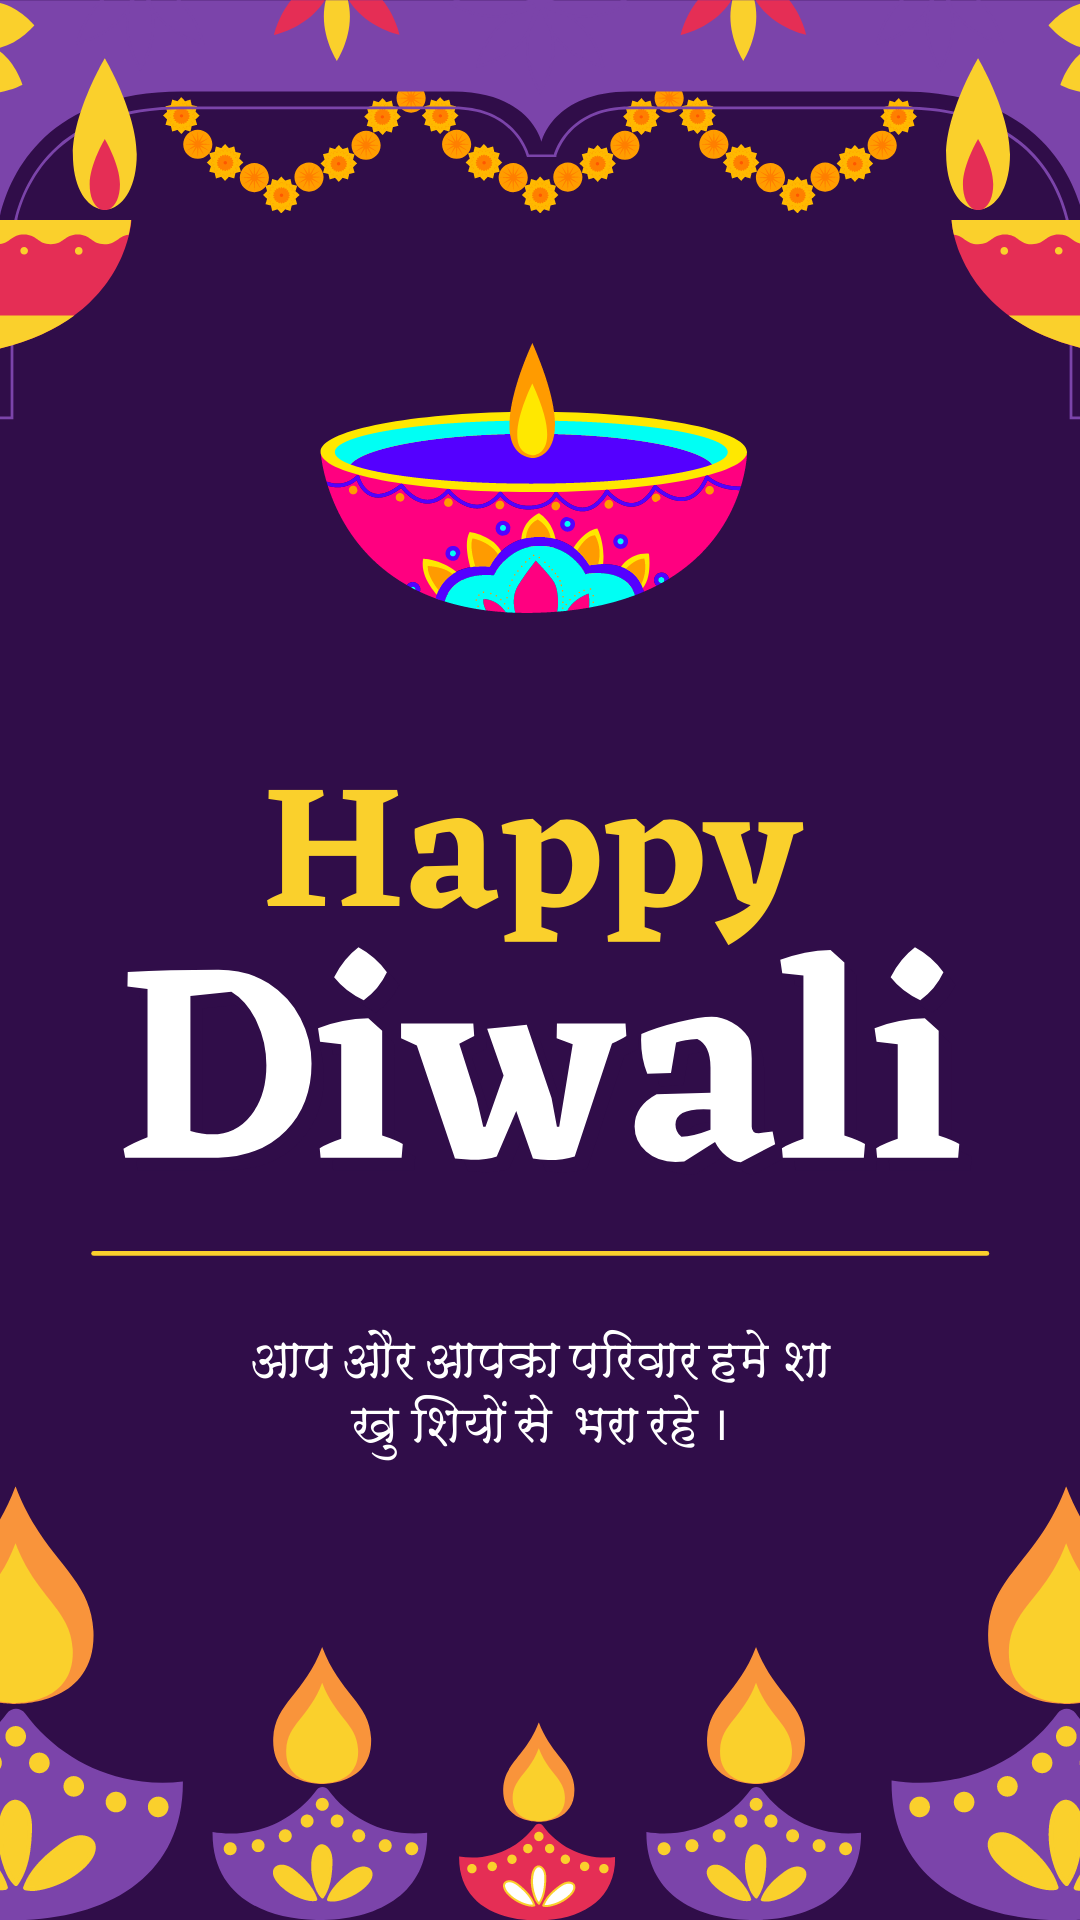 दीपावली की हार्दिक शुभकामनाएं (Happy Diwali Best Wishes)